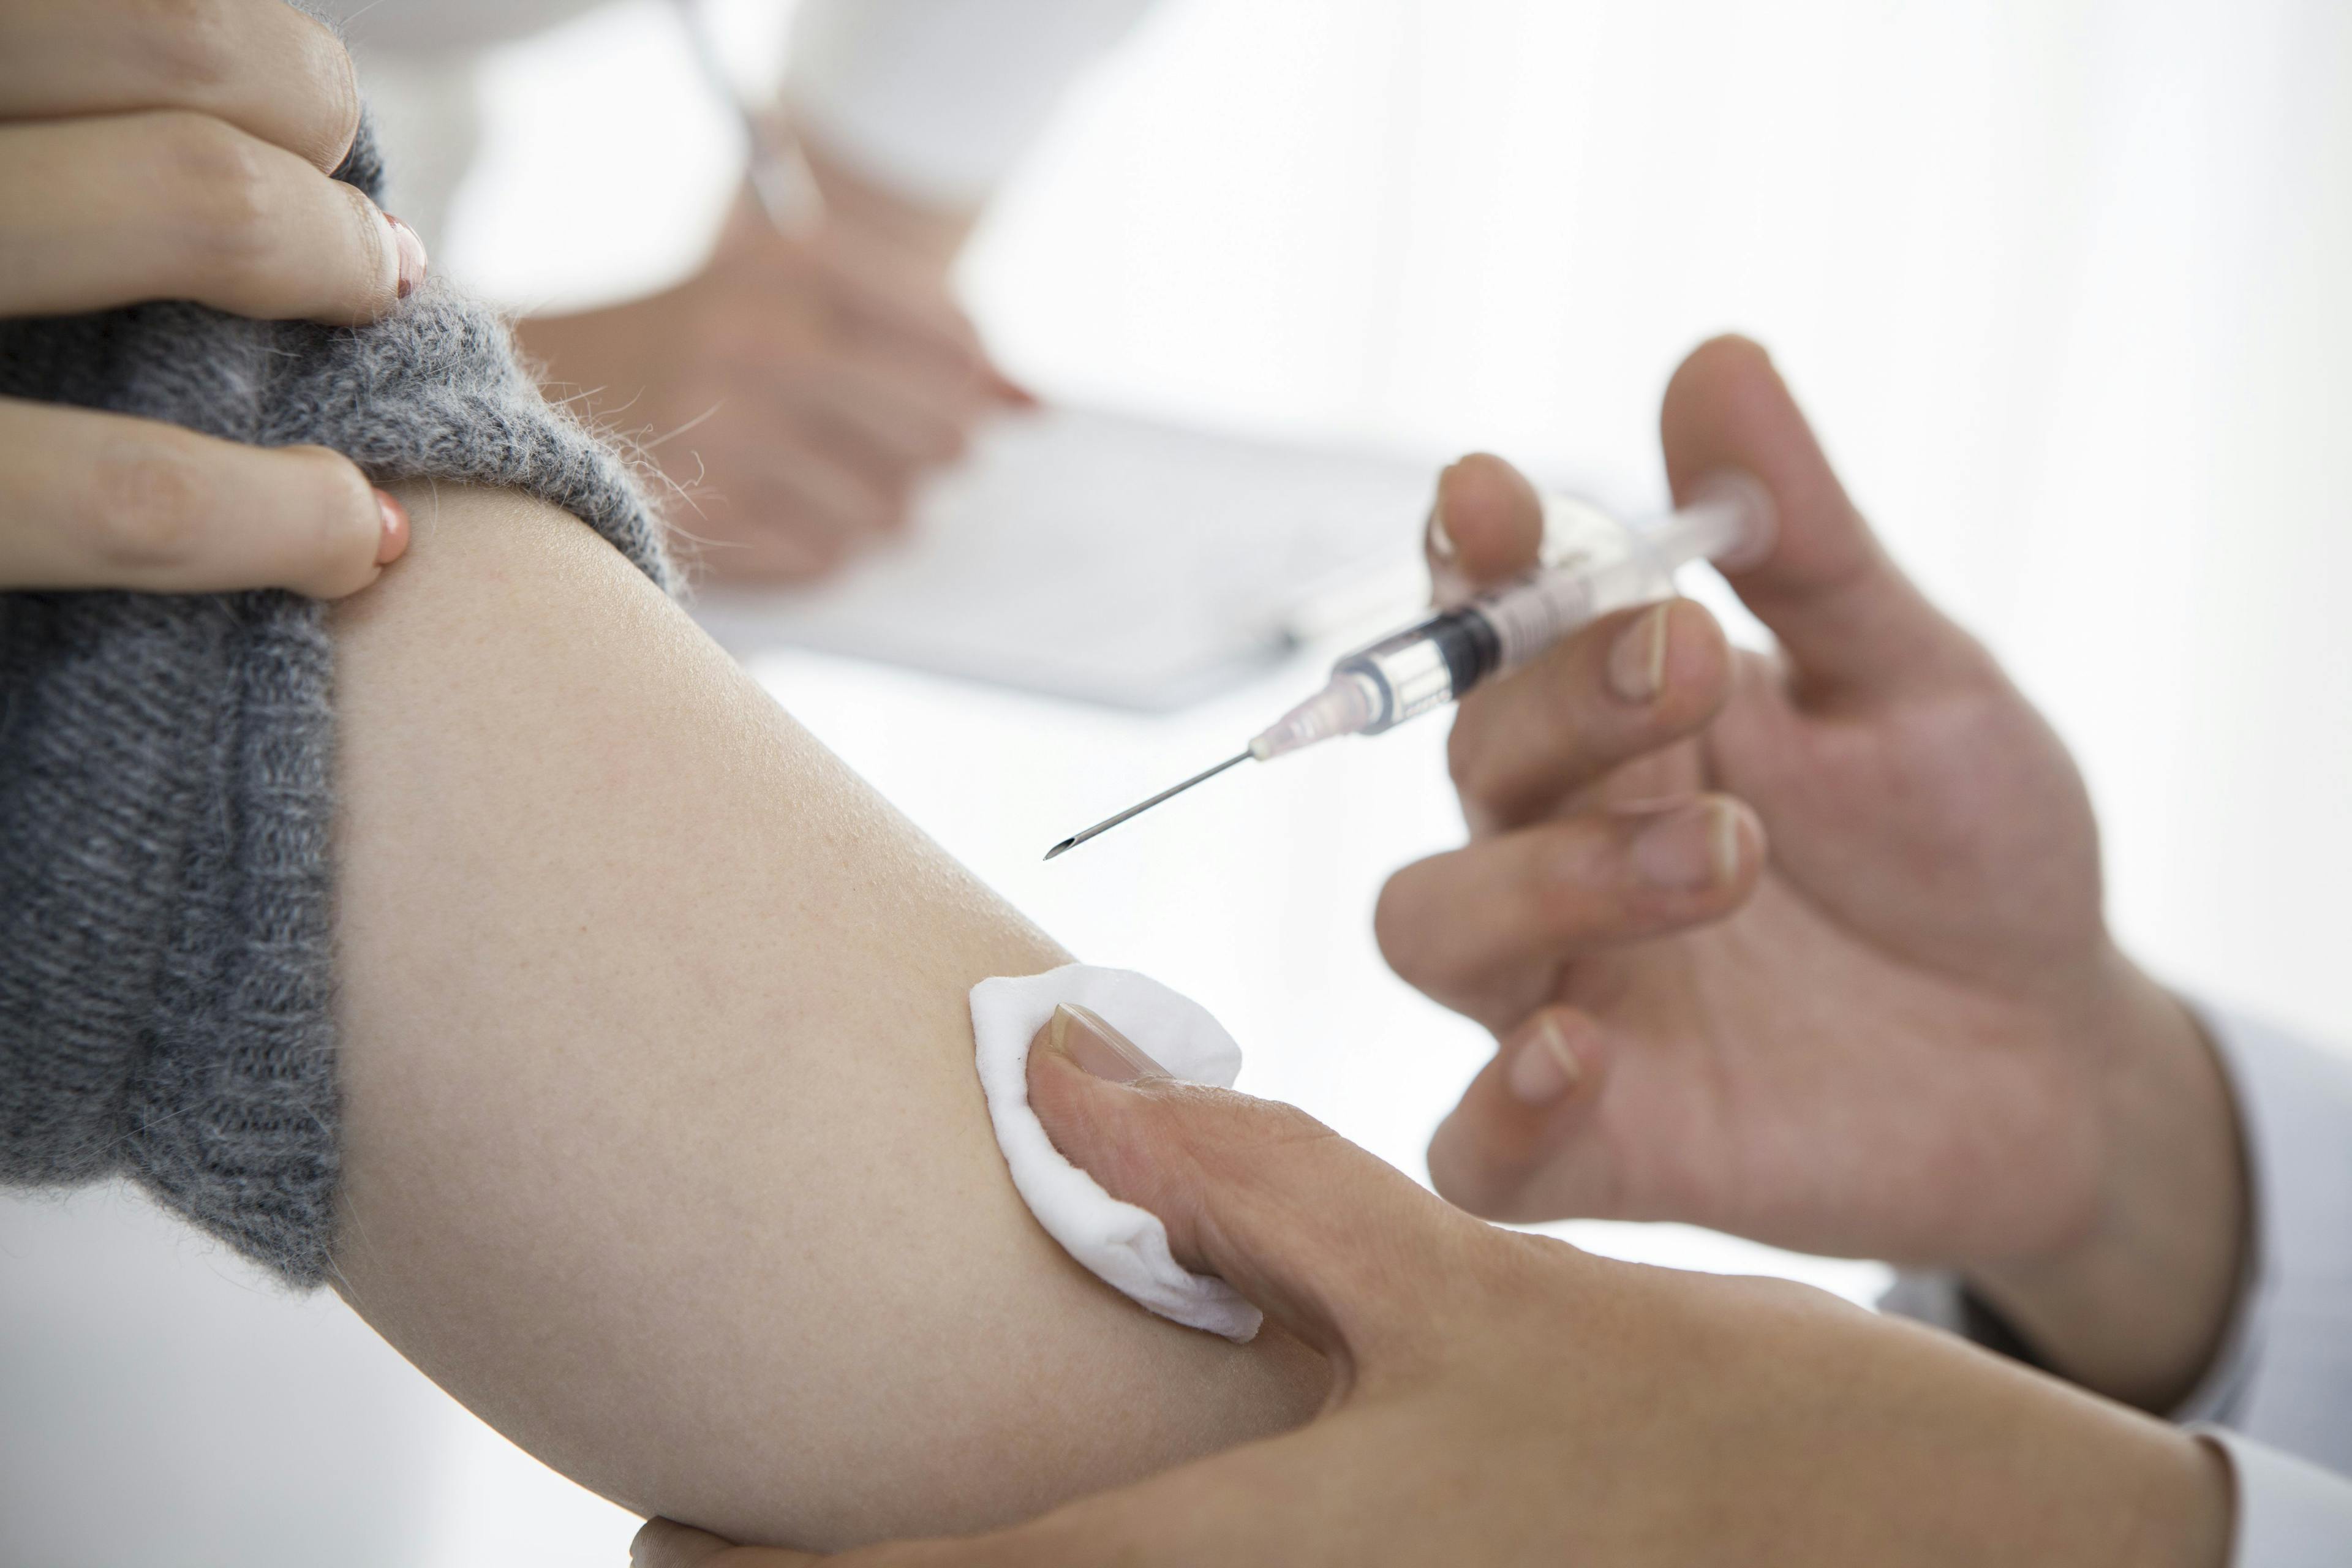 Promoting Hepatitis B Vaccination